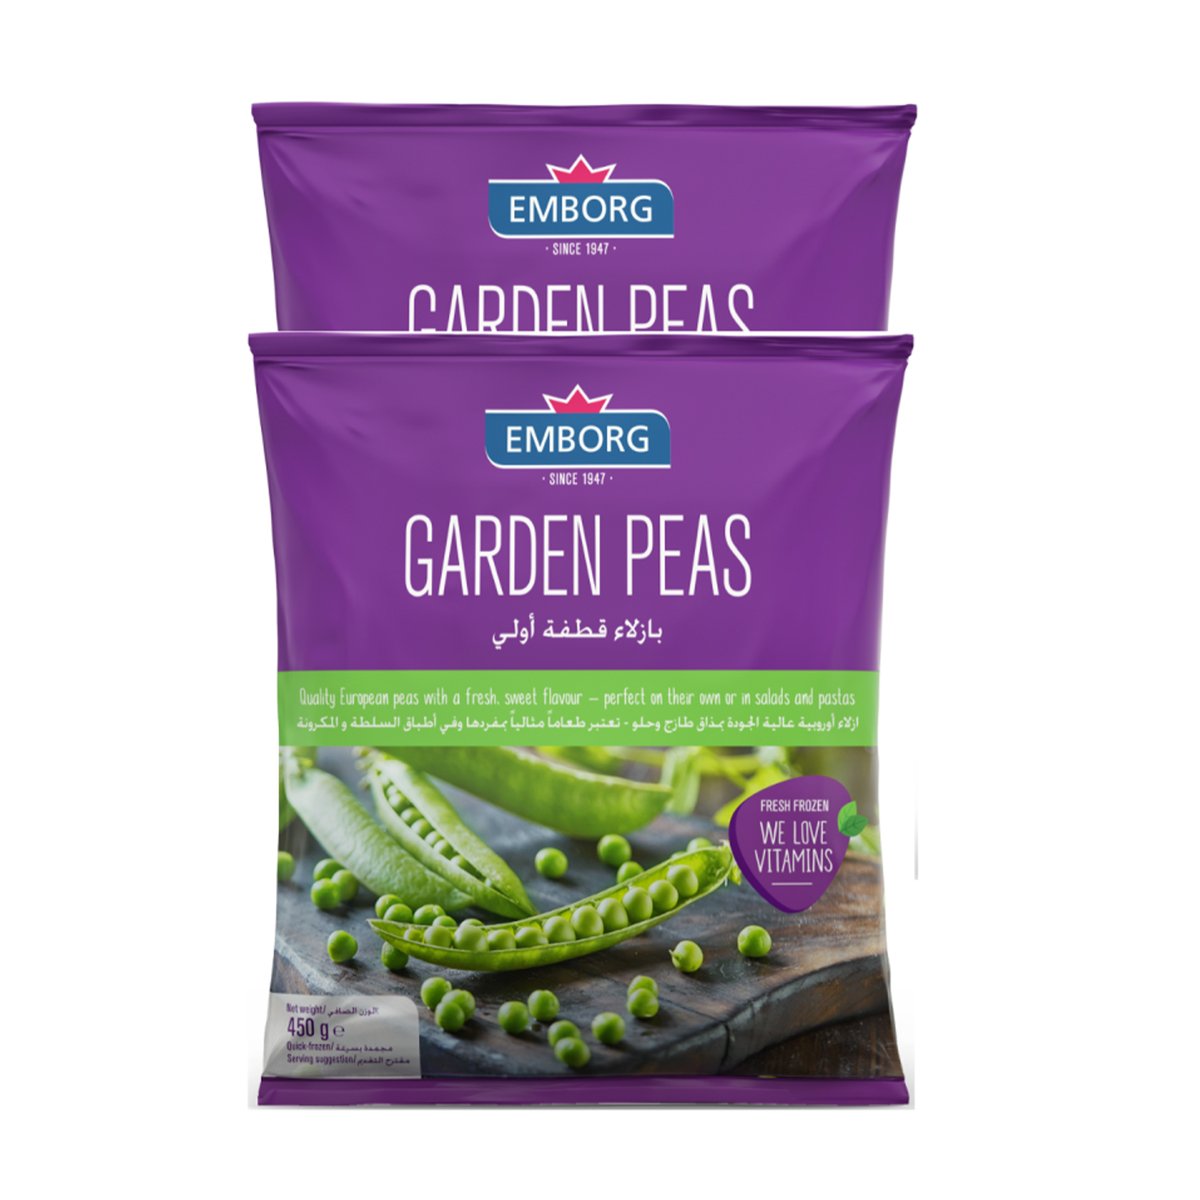 Emborg Garden Peas Value Pack 2 x 450 g